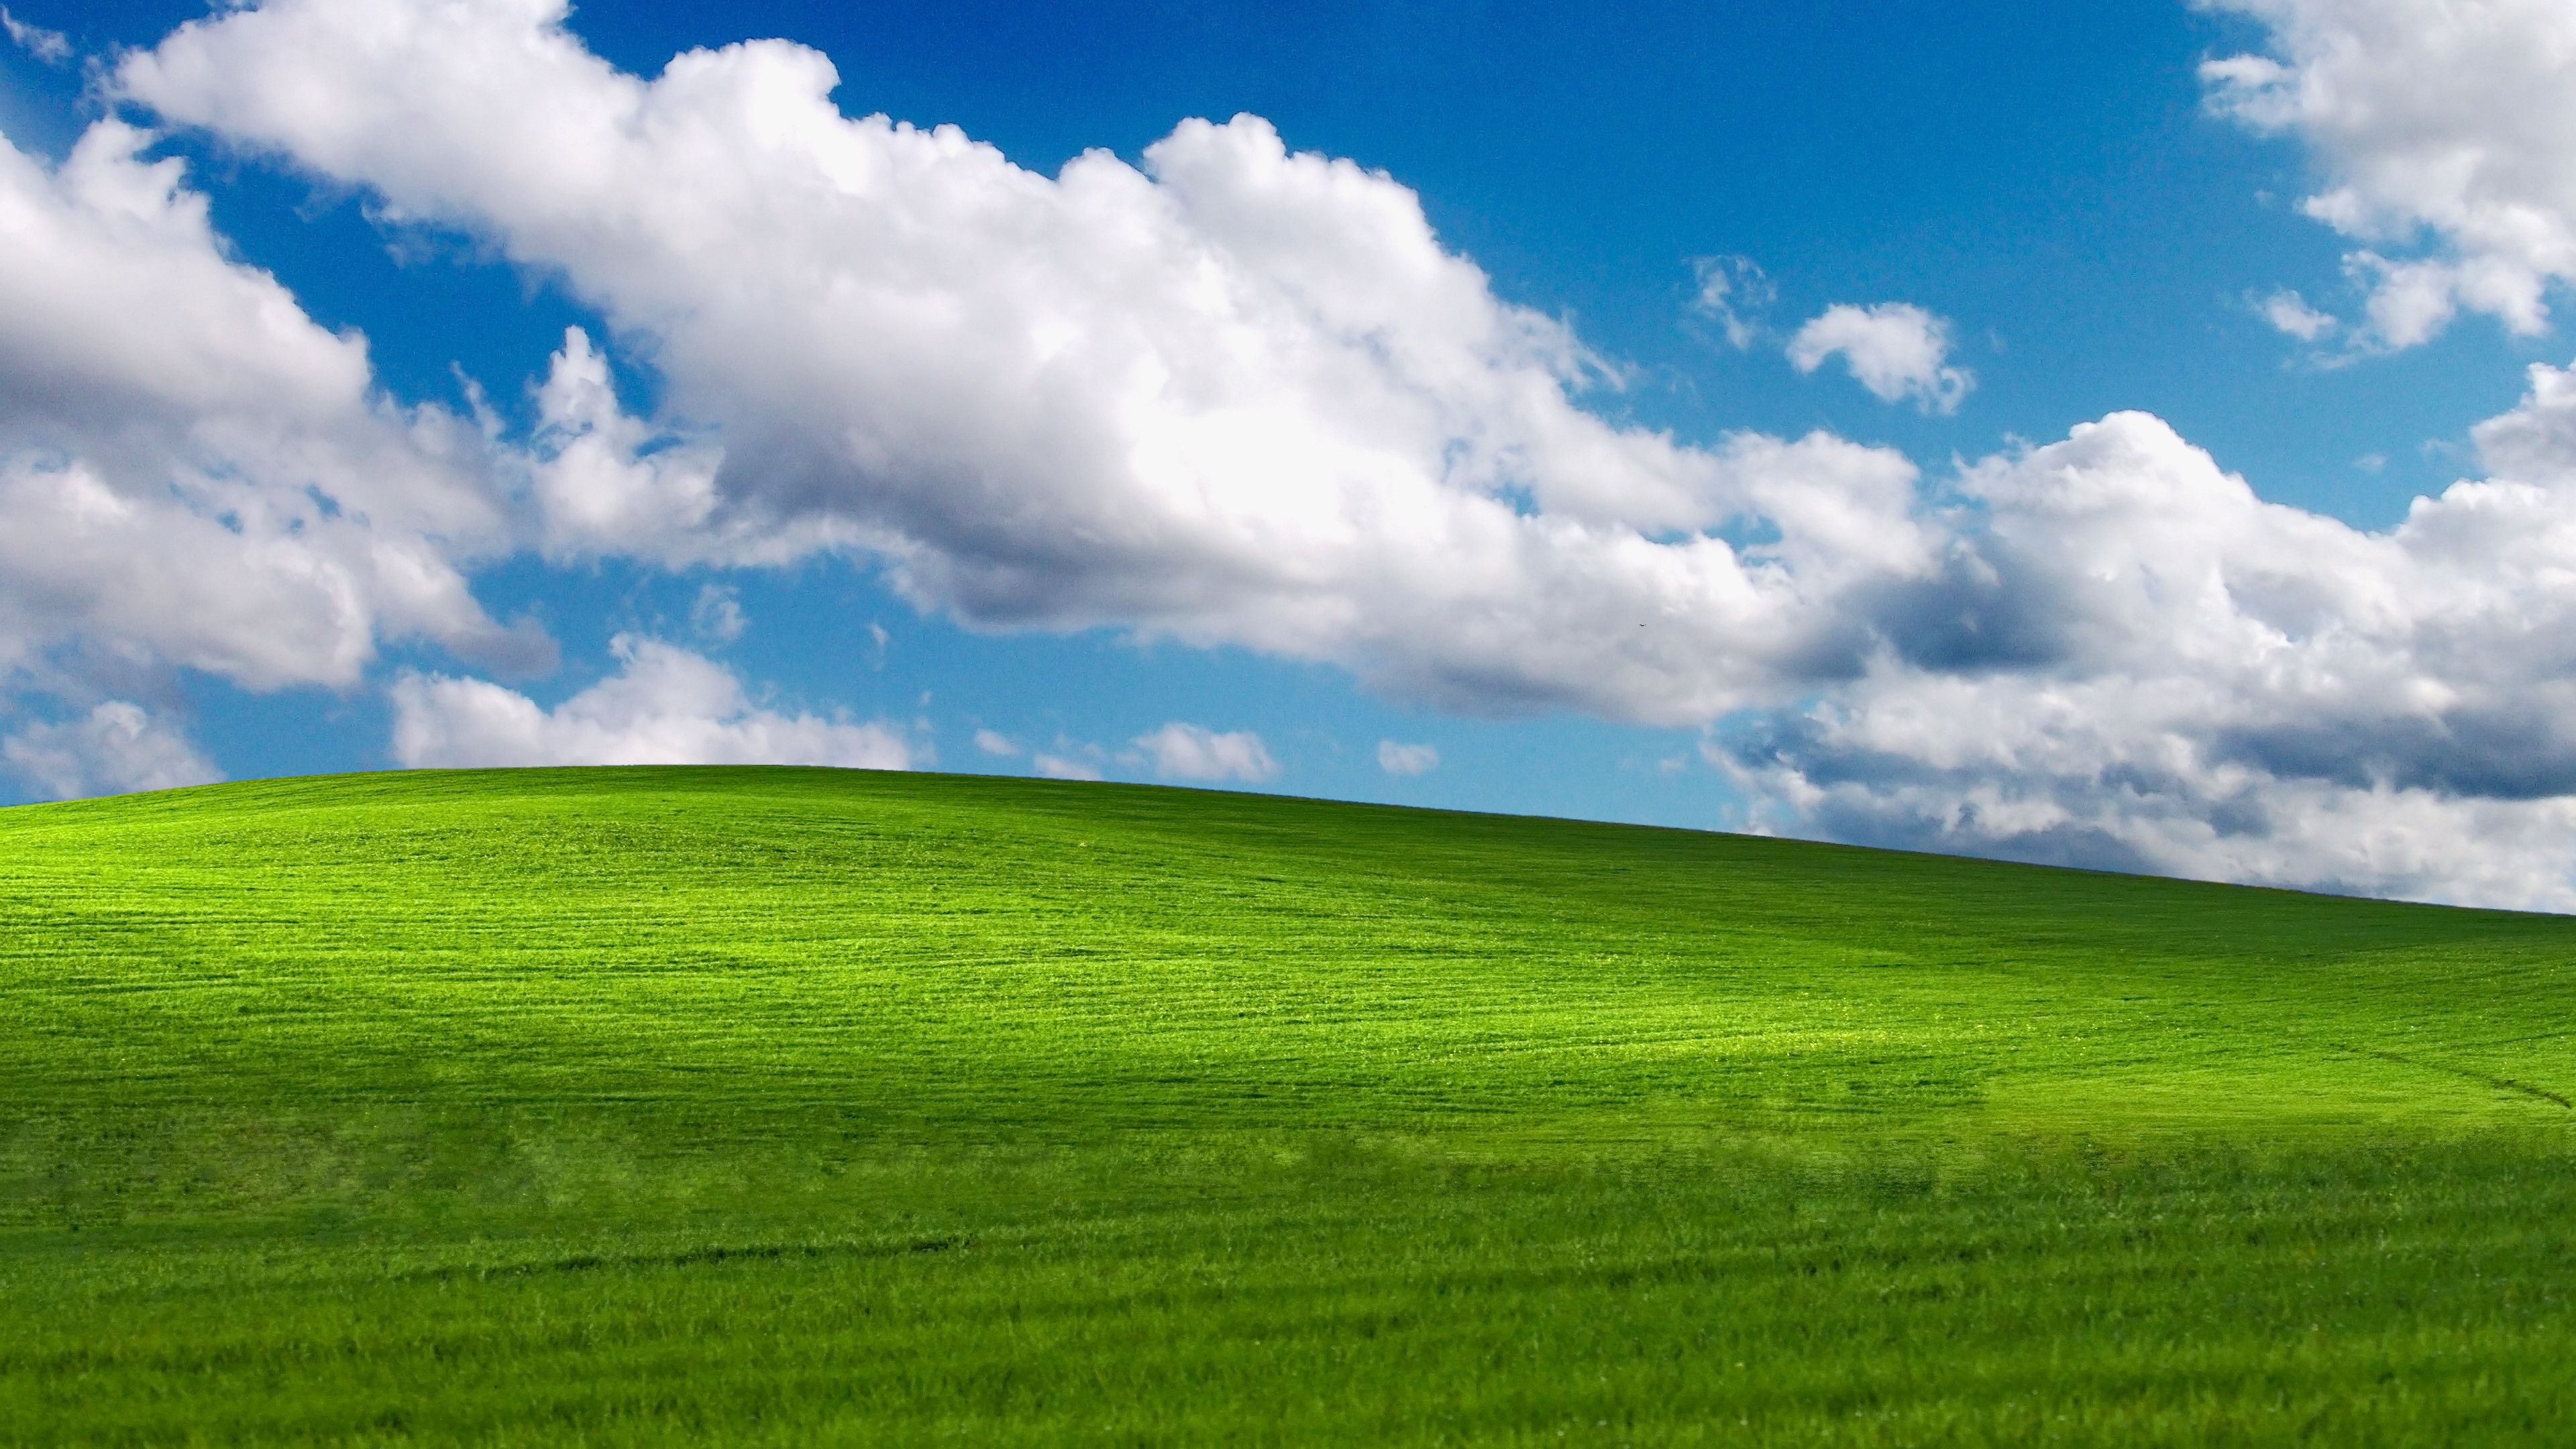 Bạn muốn tìm một hình nền desktop Windows XP đẹp để làm nổi bật màn hình desktop của mình? Hãy xem qua những hình nền Windows XP được thiết kế đẹp và sống động, mang đến cho bạn một không gian làm việc đầy sáng tạo và thú vị. Bắt đầu hành trình của bạn với hình ảnh nền đẹp và độc đáo này.